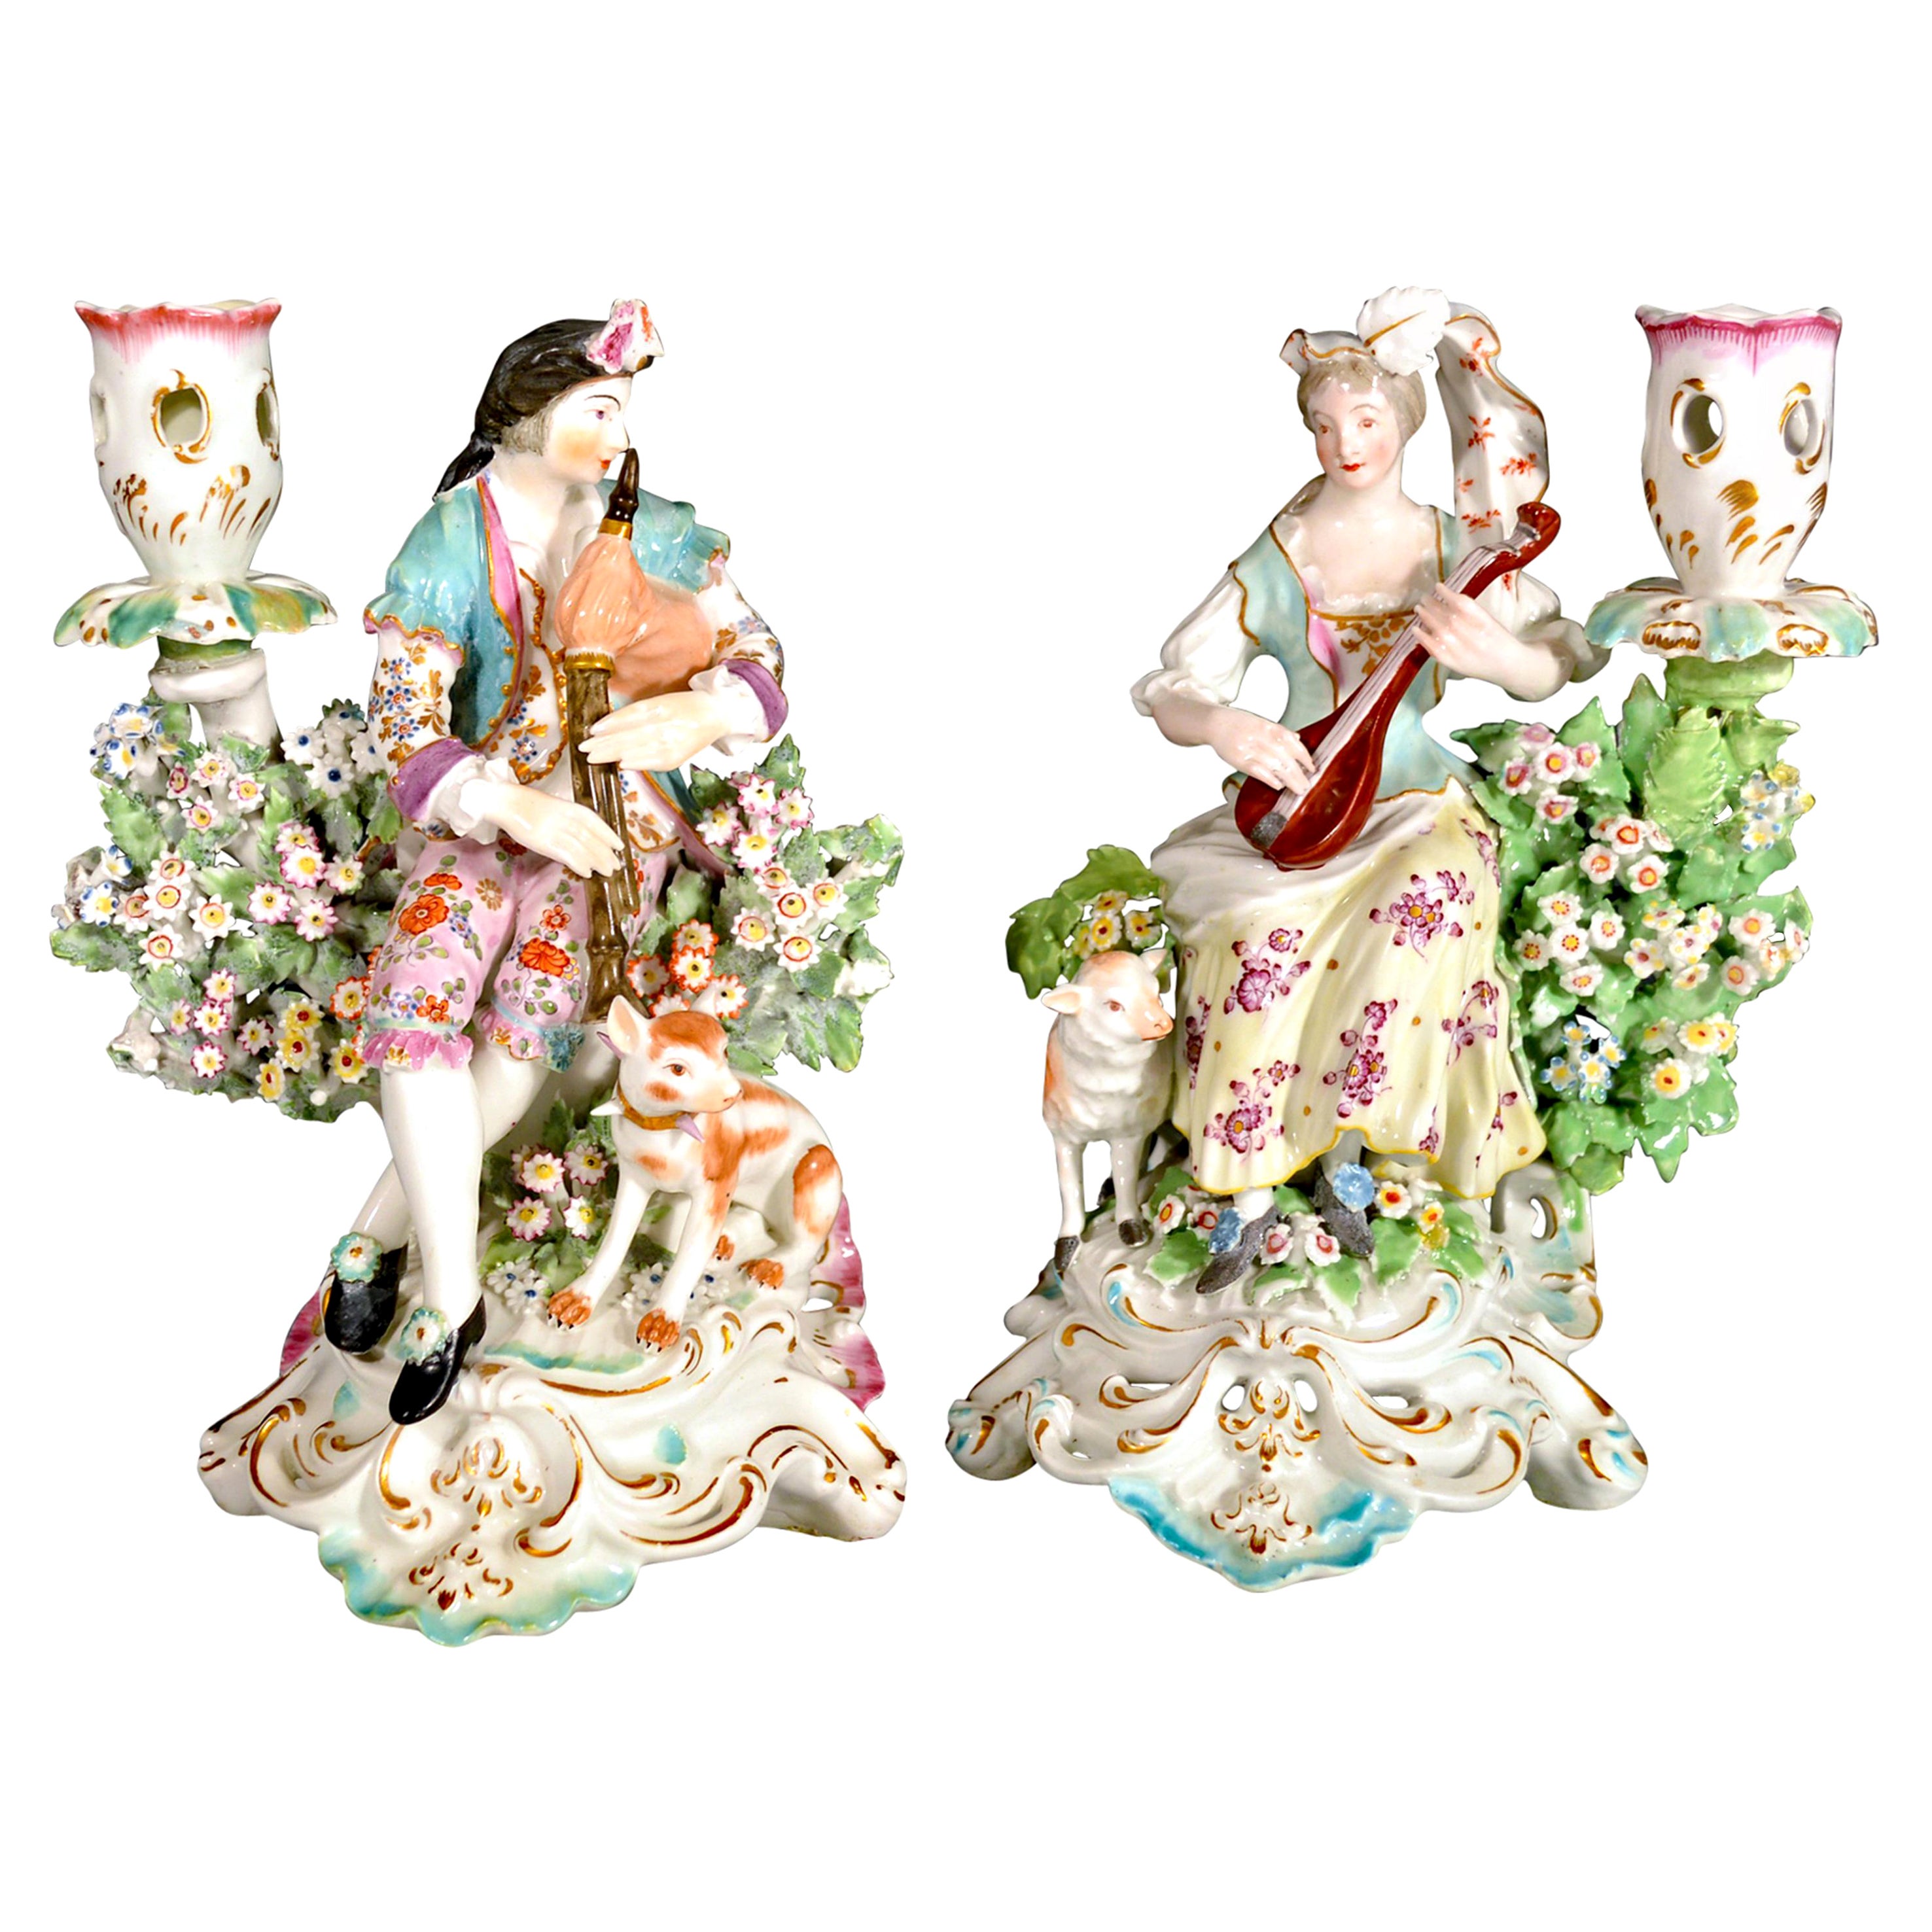 Derby Porzellanleuchter mit Musikantenfiguren, um 1760-1765